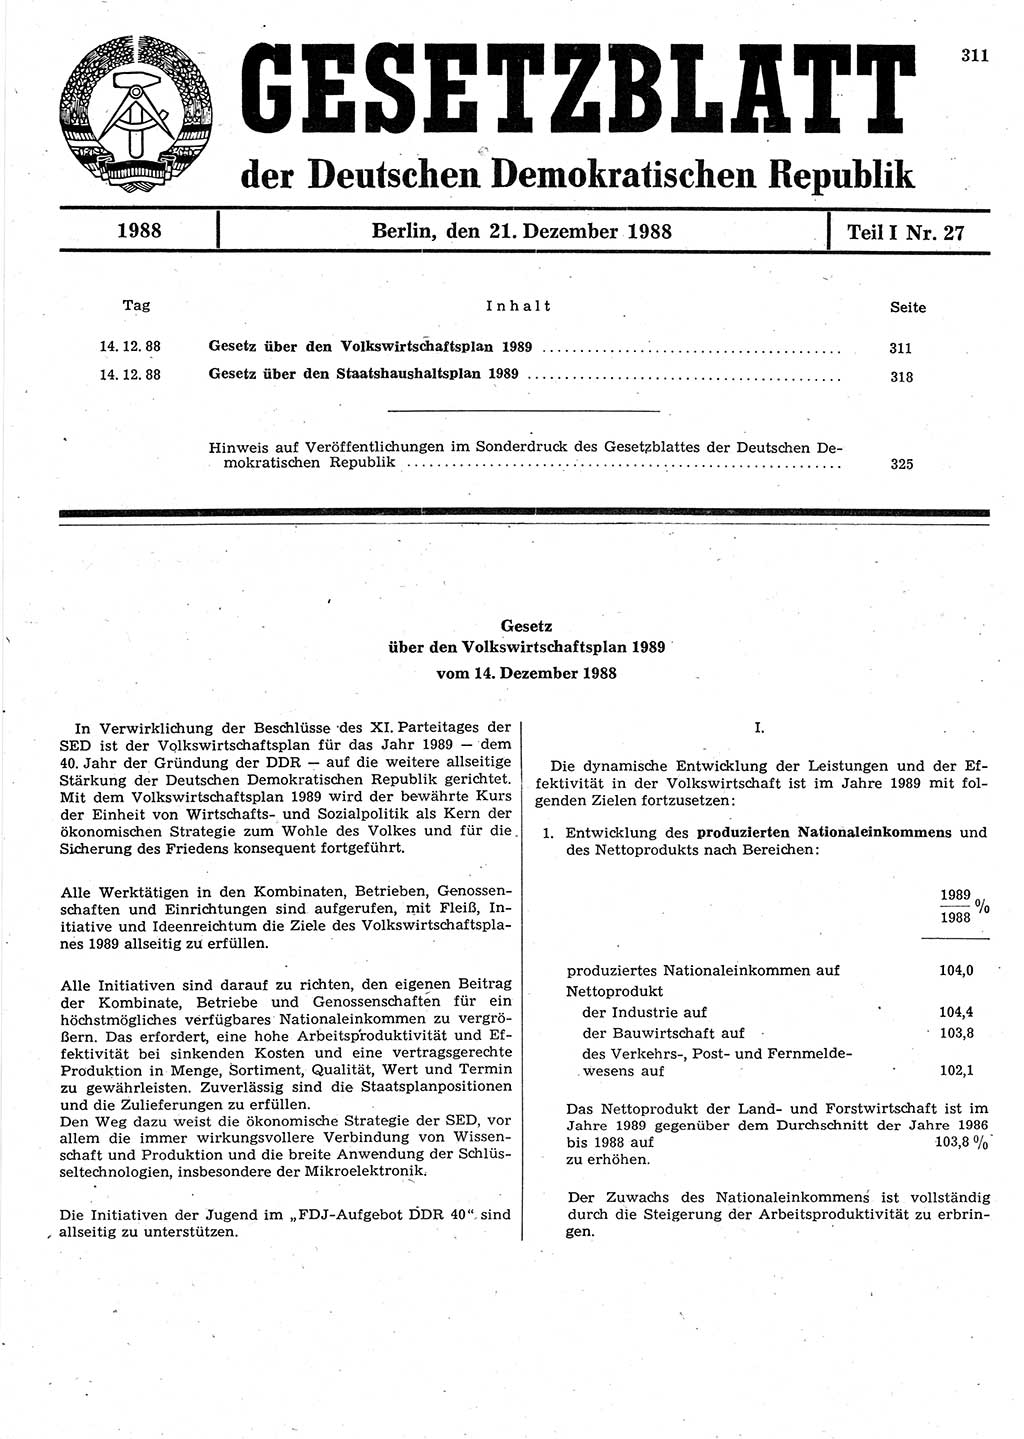 Gesetzblatt (GBl.) der Deutschen Demokratischen Republik (DDR) Teil Ⅰ 1988, Seite 311 (GBl. DDR Ⅰ 1988, S. 311)